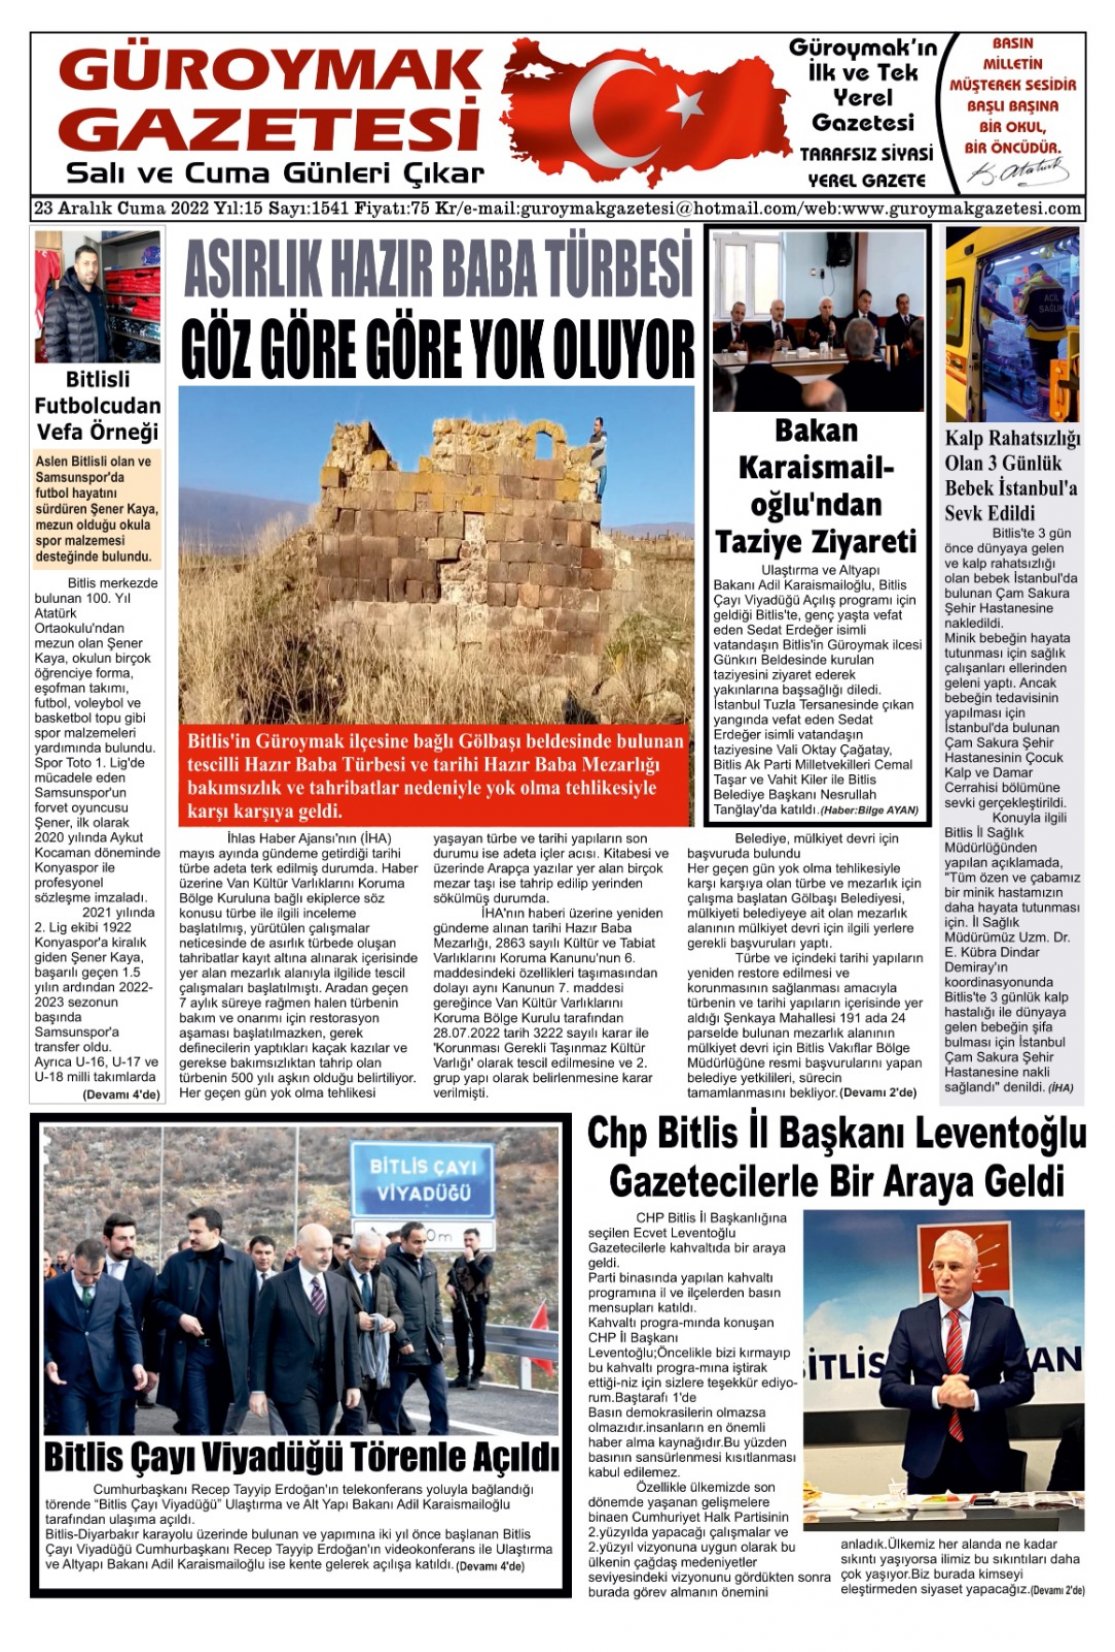 Güroymak Gazetesi WhatsApp Image 2022-12-22 at 22.28.11.jpeg Sayılı Gazete Küpürü